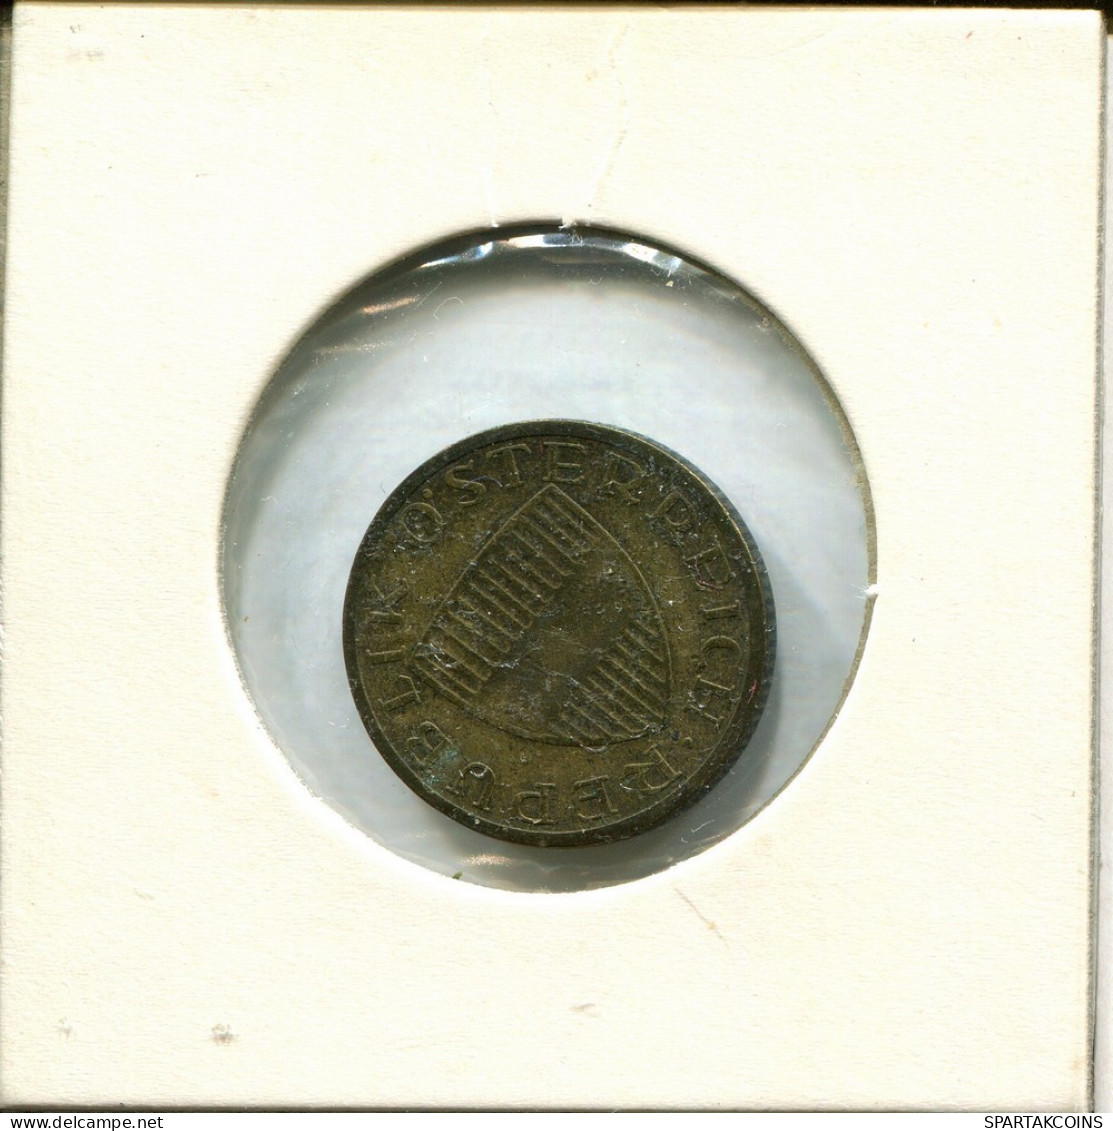 50 GROSCHEN 1961 AUSTRIA Moneda #AV050.E.A - Austria